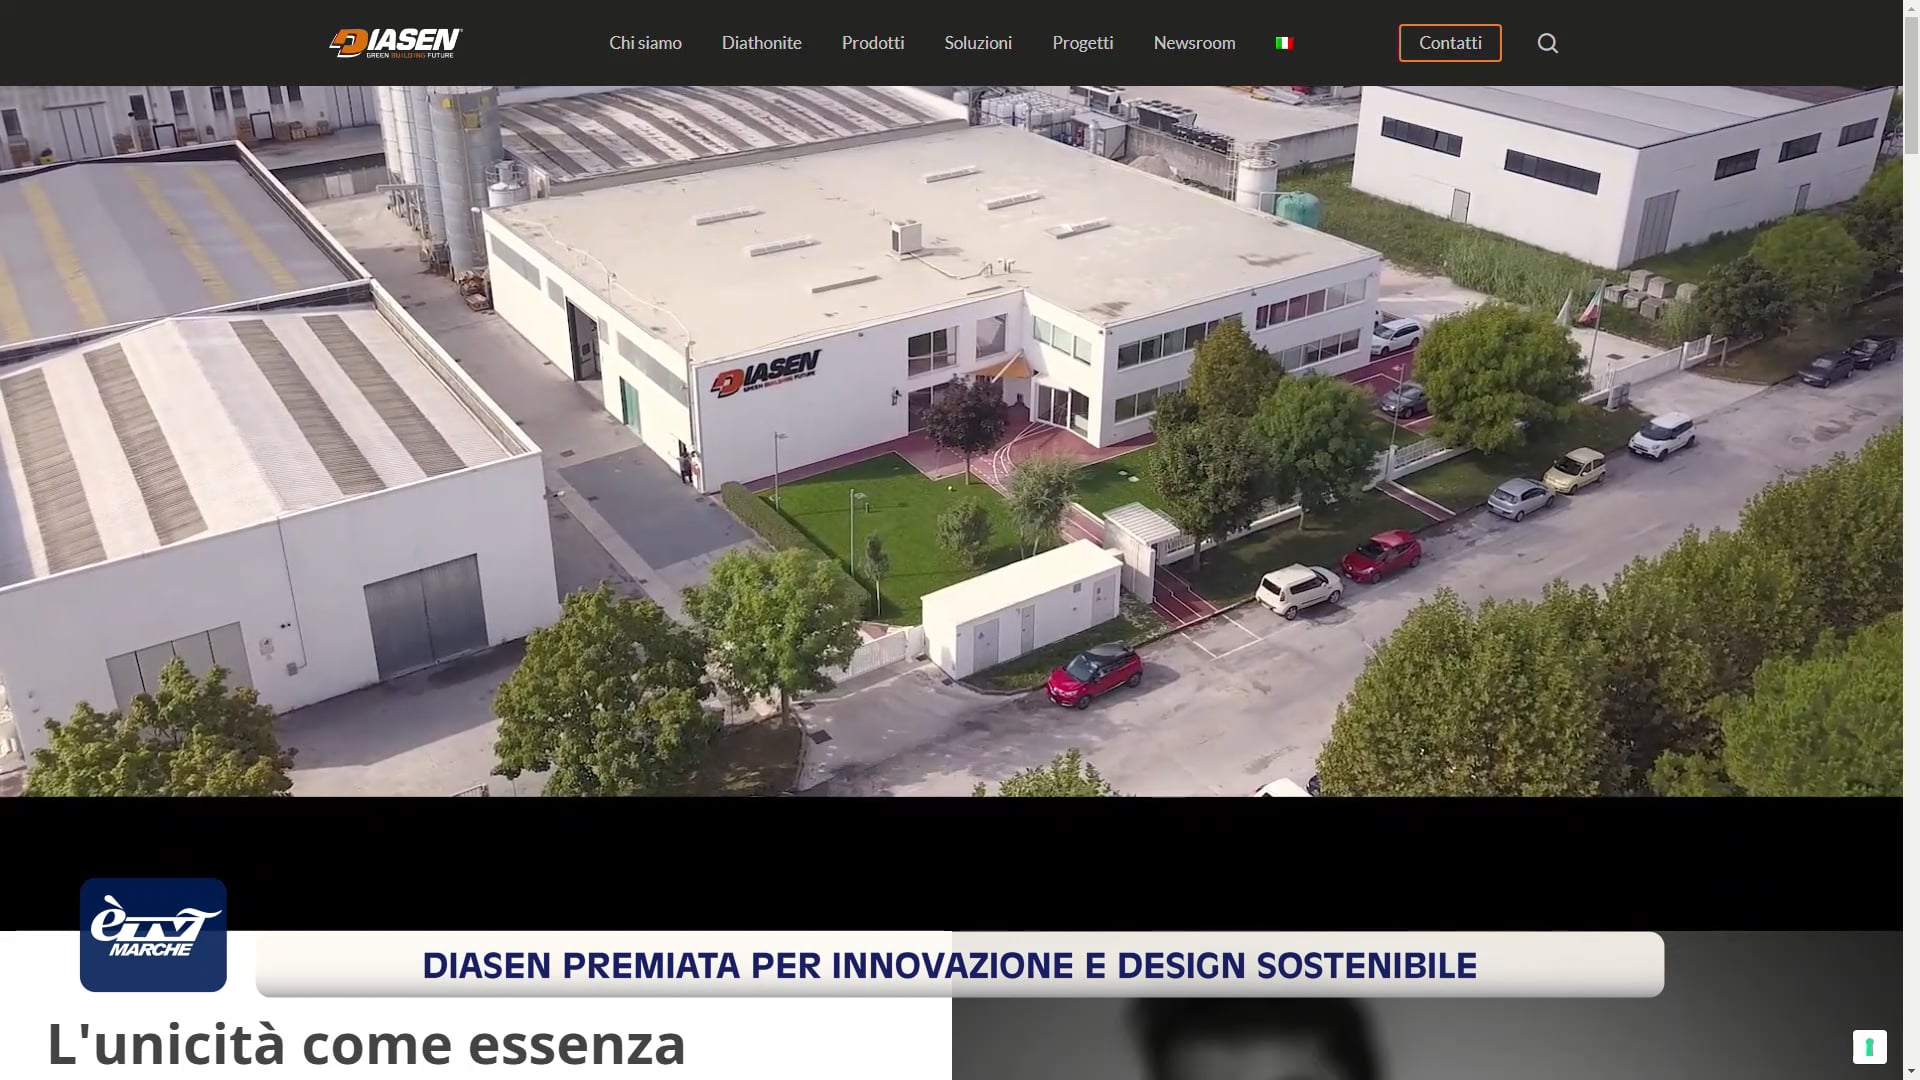 Diasen premiata per innovazione e design sostenibile - VIDEO